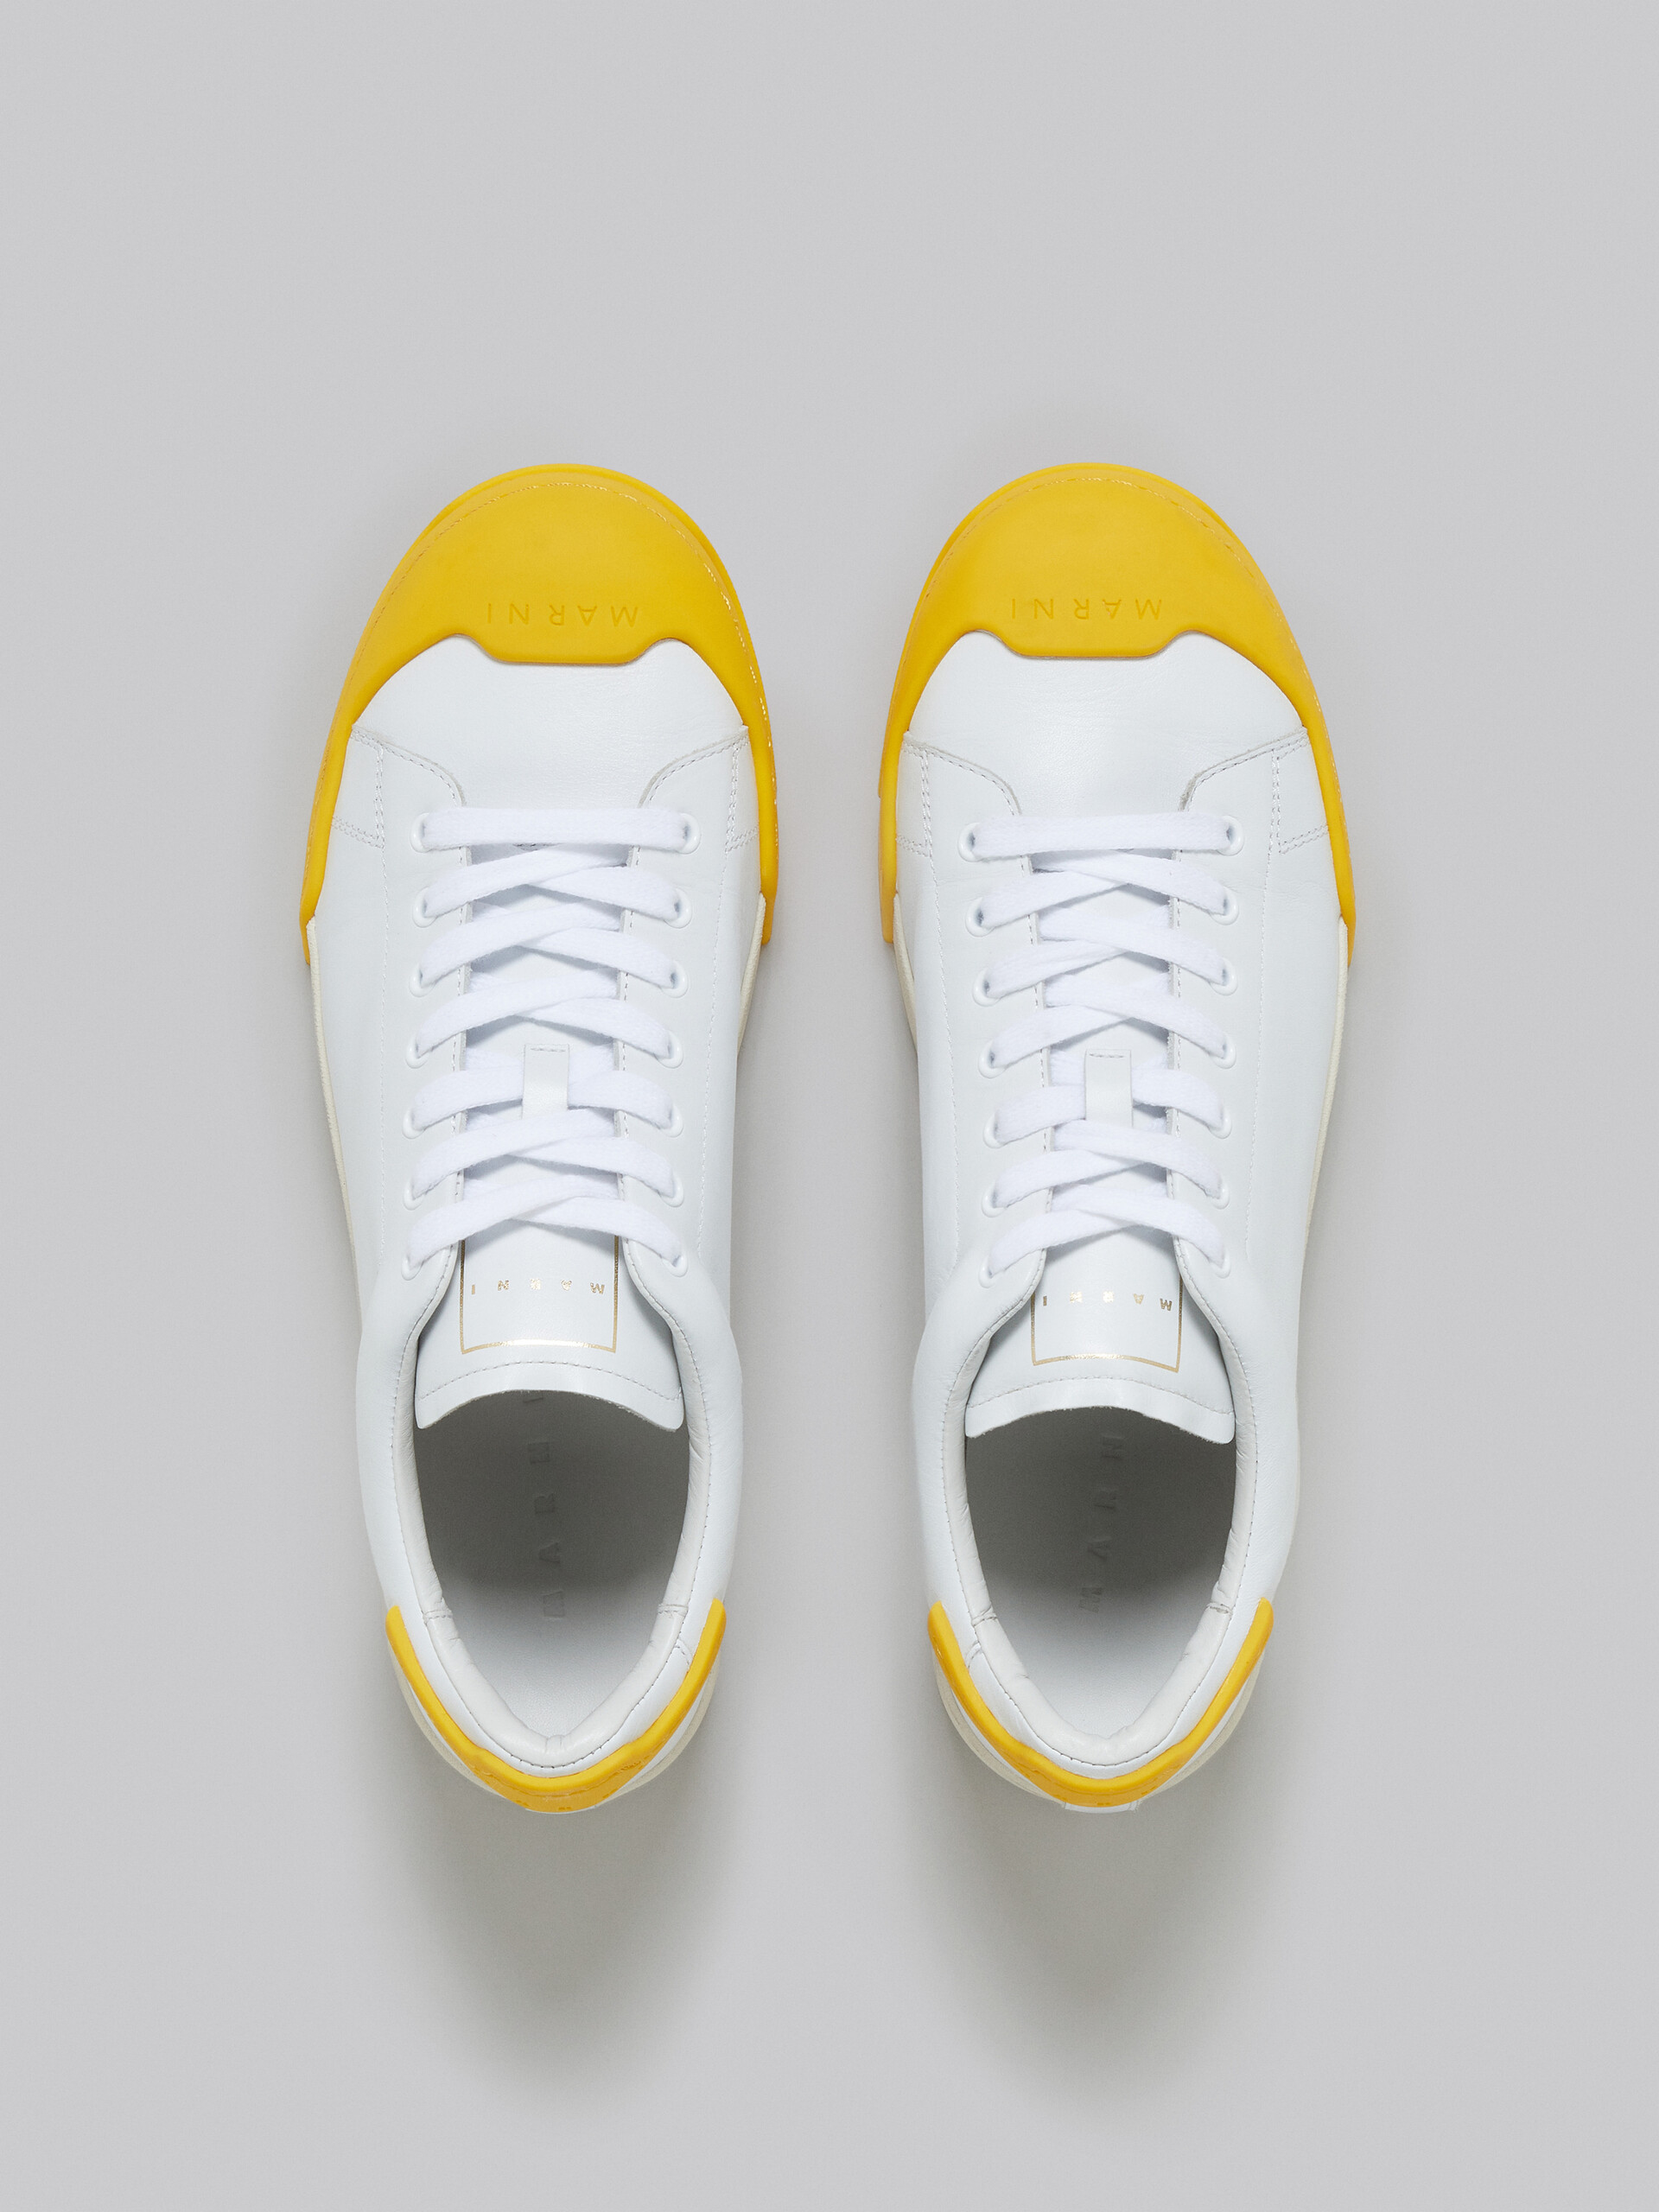 Sneaker Dada Bumper in pelle bianca e gialla - Sneakers - Image 4